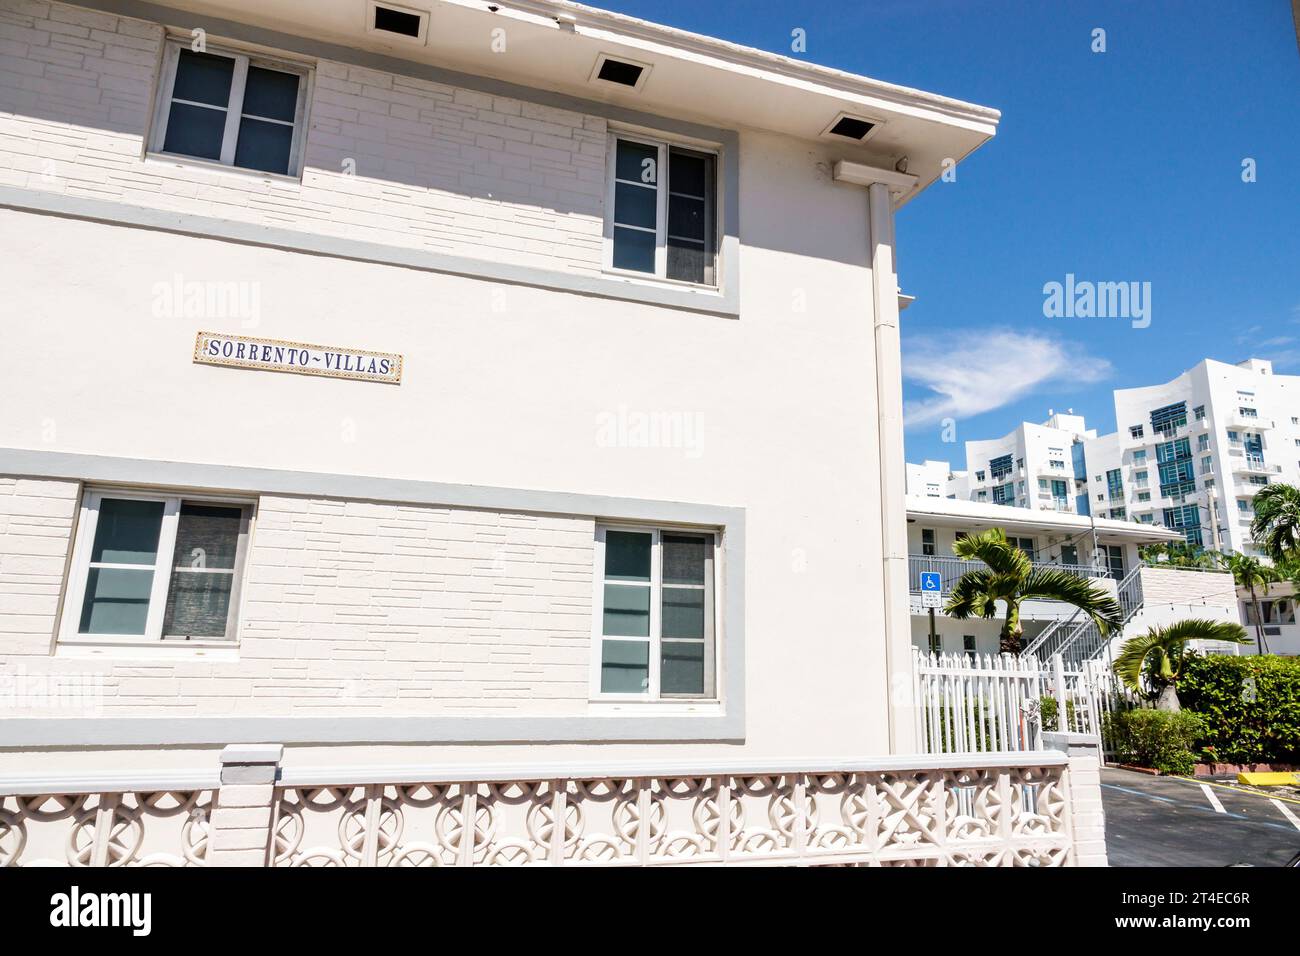 Miami Beach Floride, extérieur, condos entrée principale du bâtiment, North Beach, panneau Sorrento Villas, Miami Modernism MIMO style architecture, hôtels Mo Banque D'Images